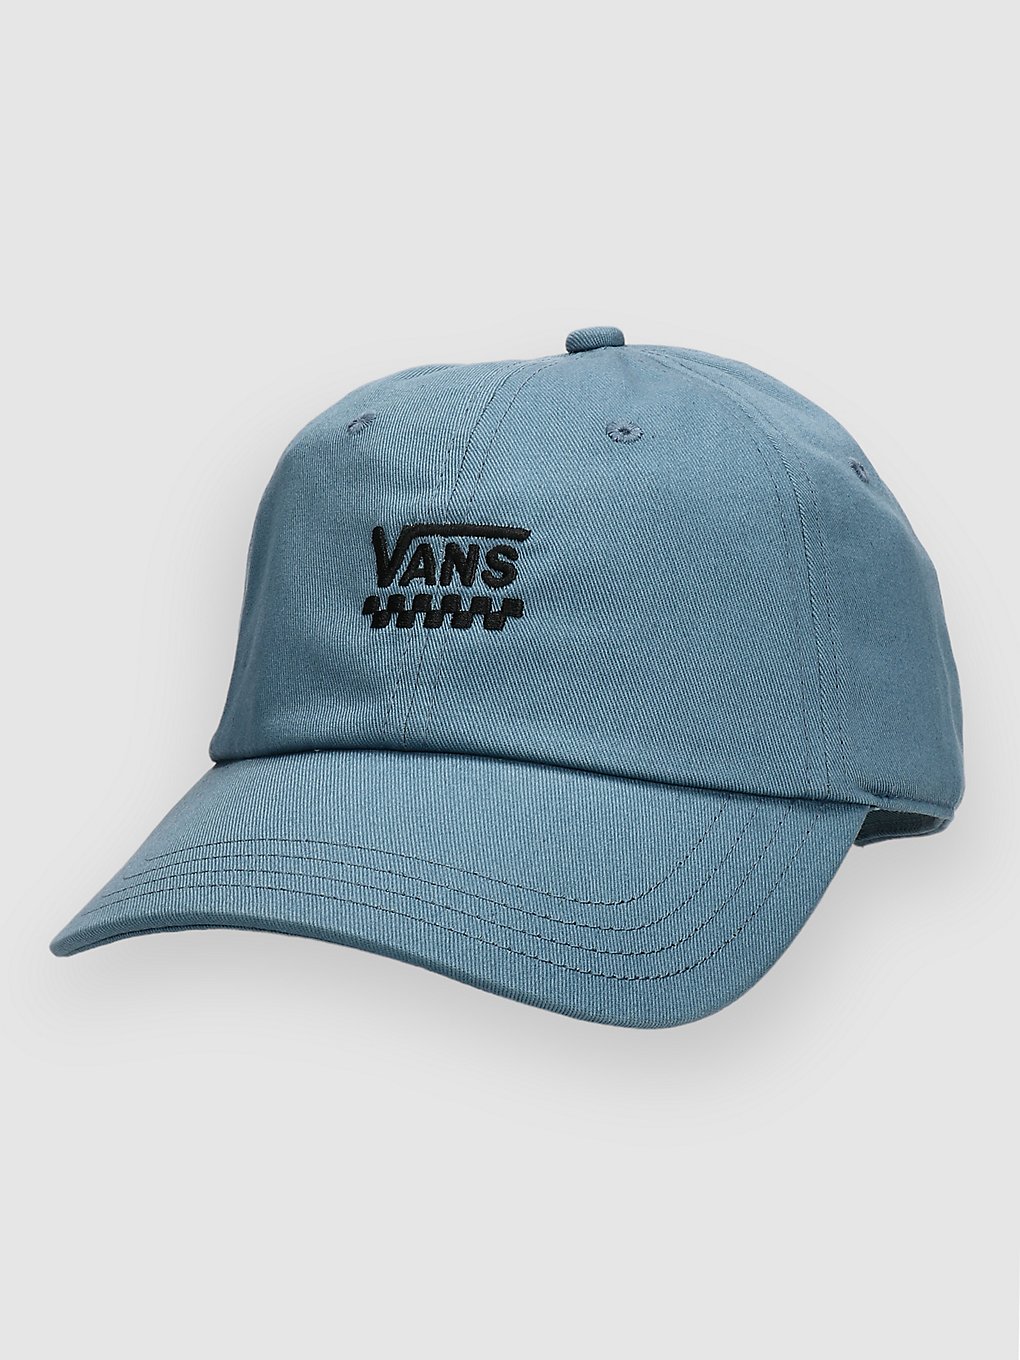 Vans Court Side Cap bluestone kaufen